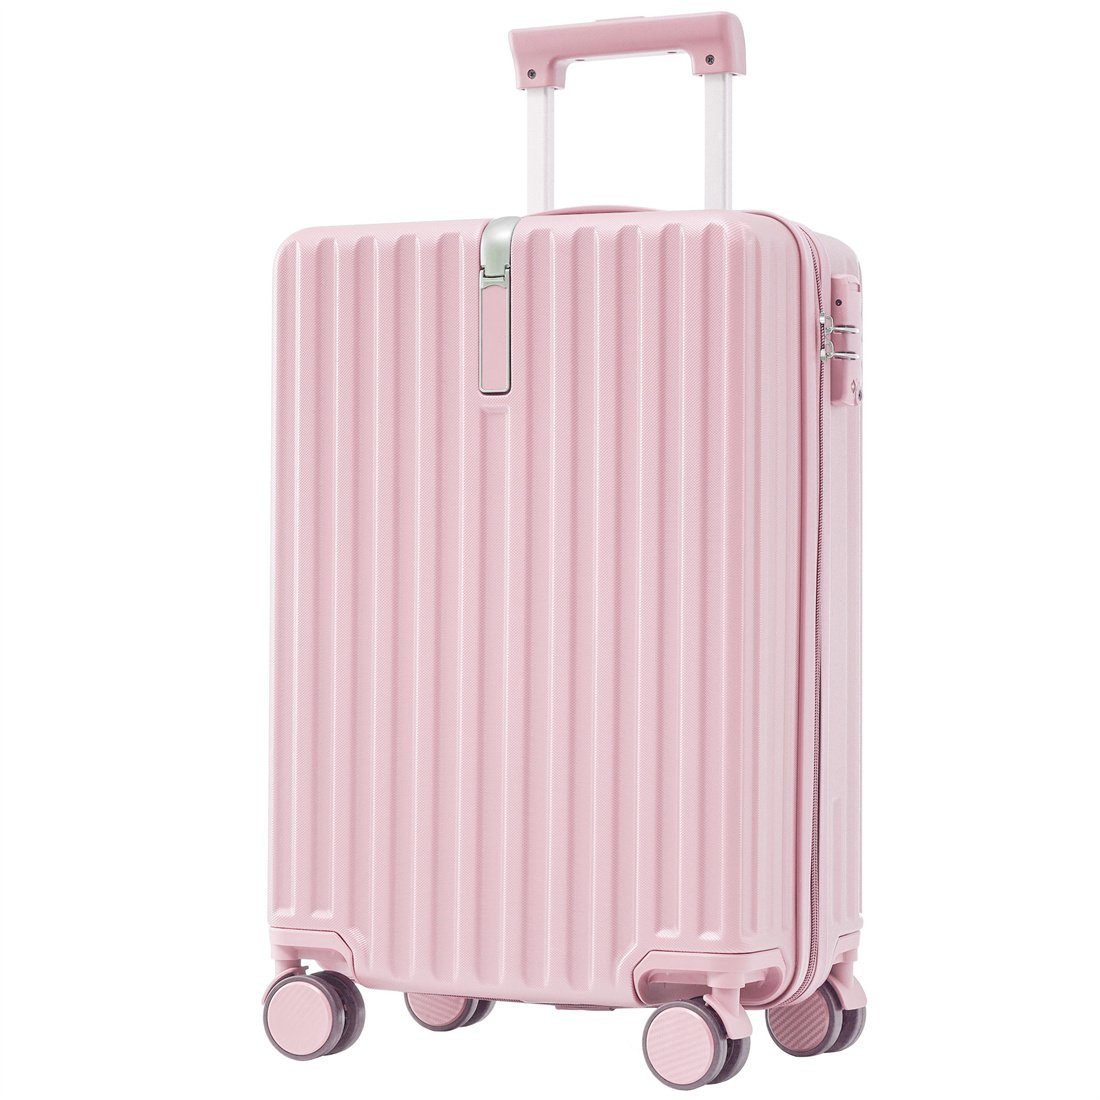 DÖRÖY Koffer 55*36*21cm,rosa Hartschalen-Koffer, Handgepäck 4 Rollen, ABS-Material